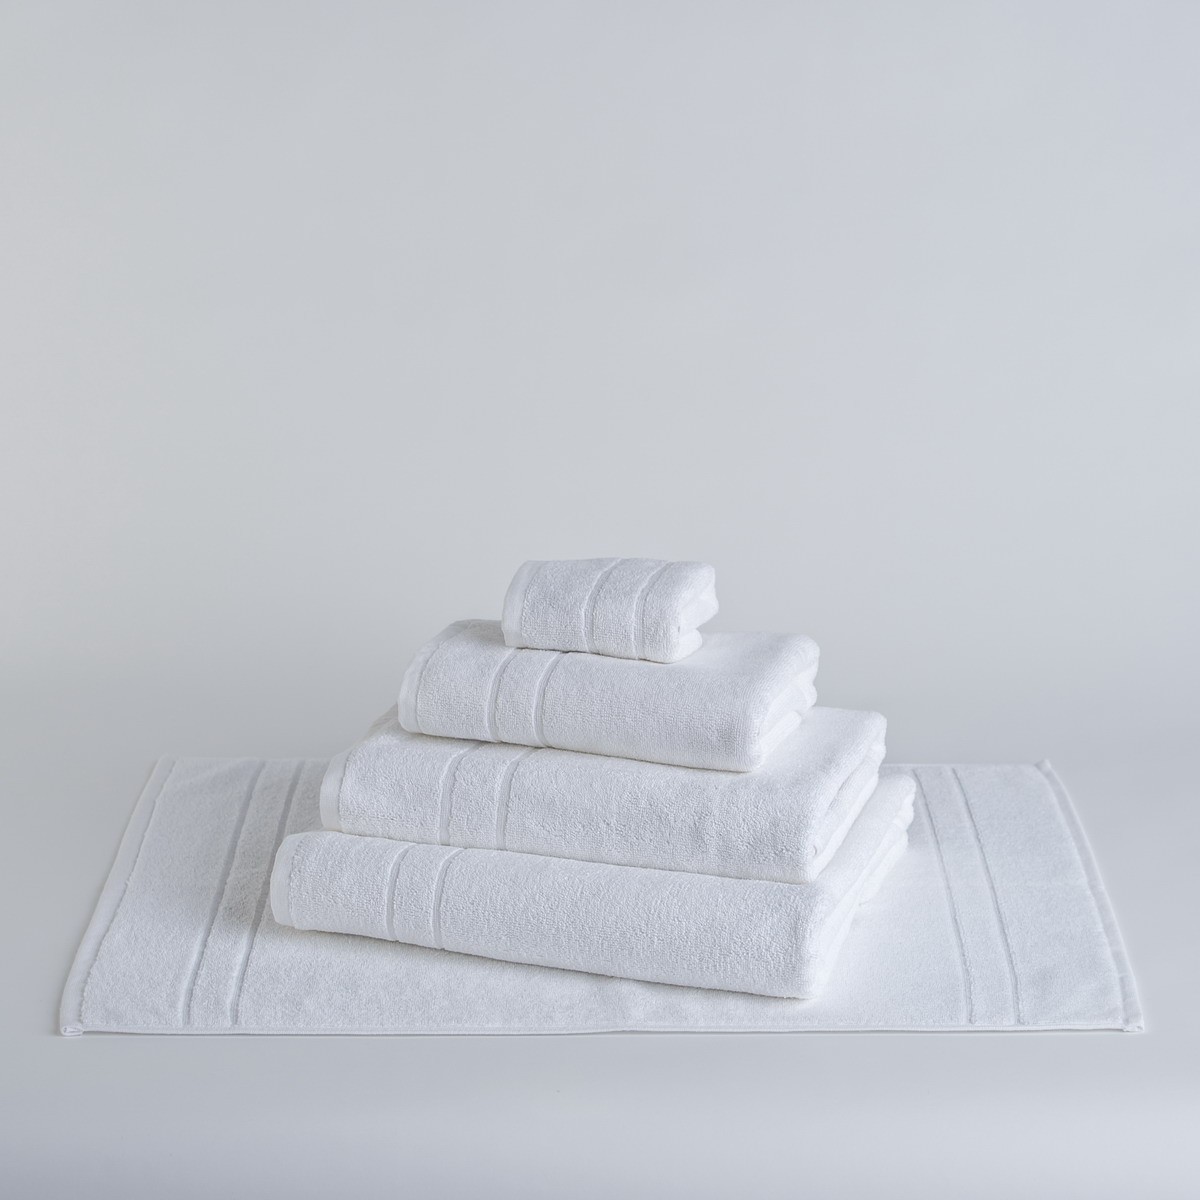 verde KingNew Toalla de baño de algodón suave toallas de baño de mano 33 cm x 73 cm 100 % lujosa 